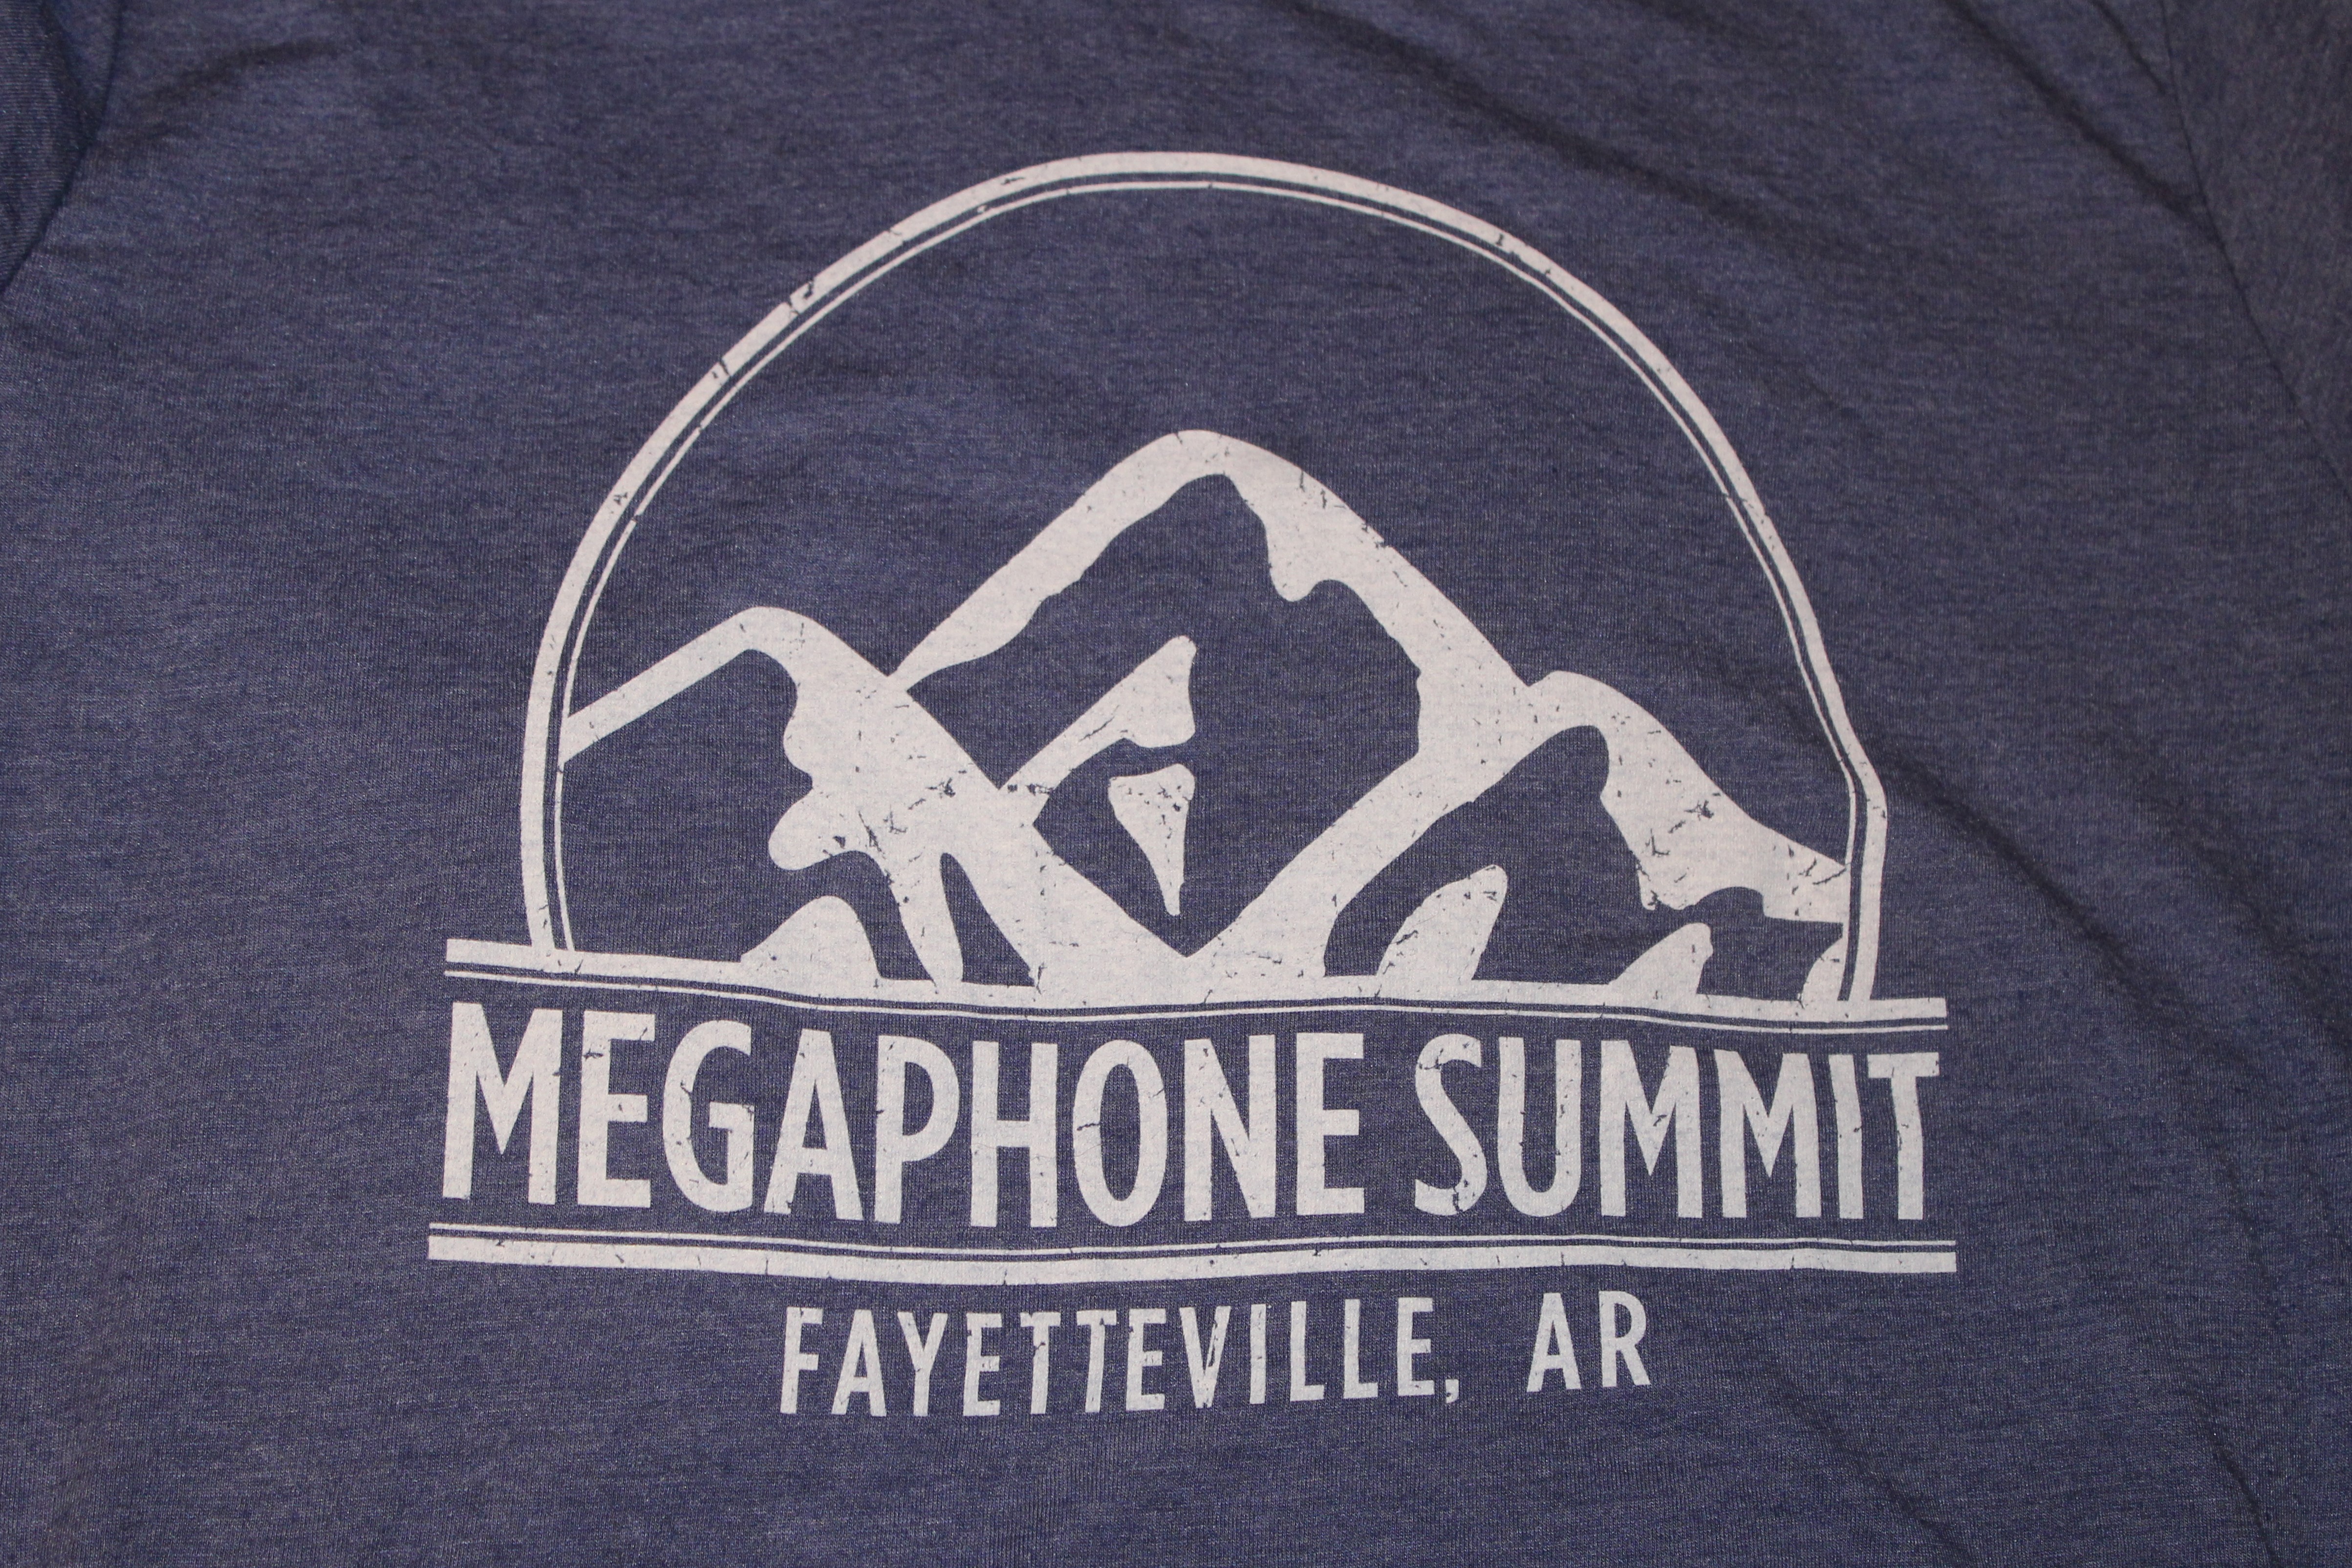 A recap of Megaphone Summit